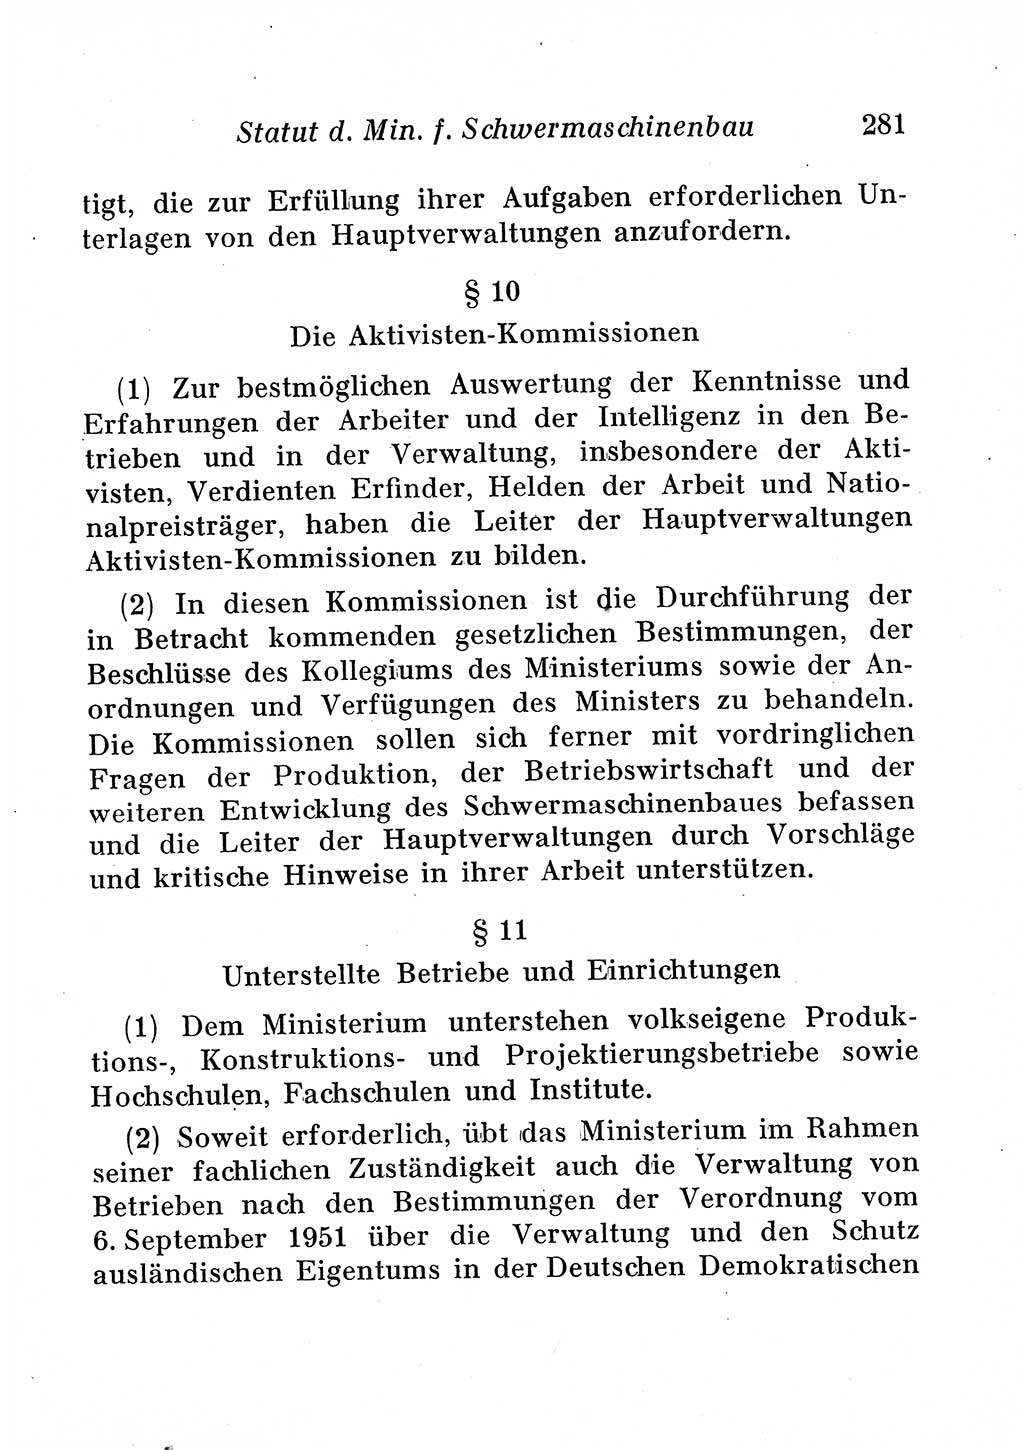 Staats- und verwaltungsrechtliche Gesetze der Deutschen Demokratischen Republik (DDR) 1958, Seite 281 (StVerwR Ges. DDR 1958, S. 281)